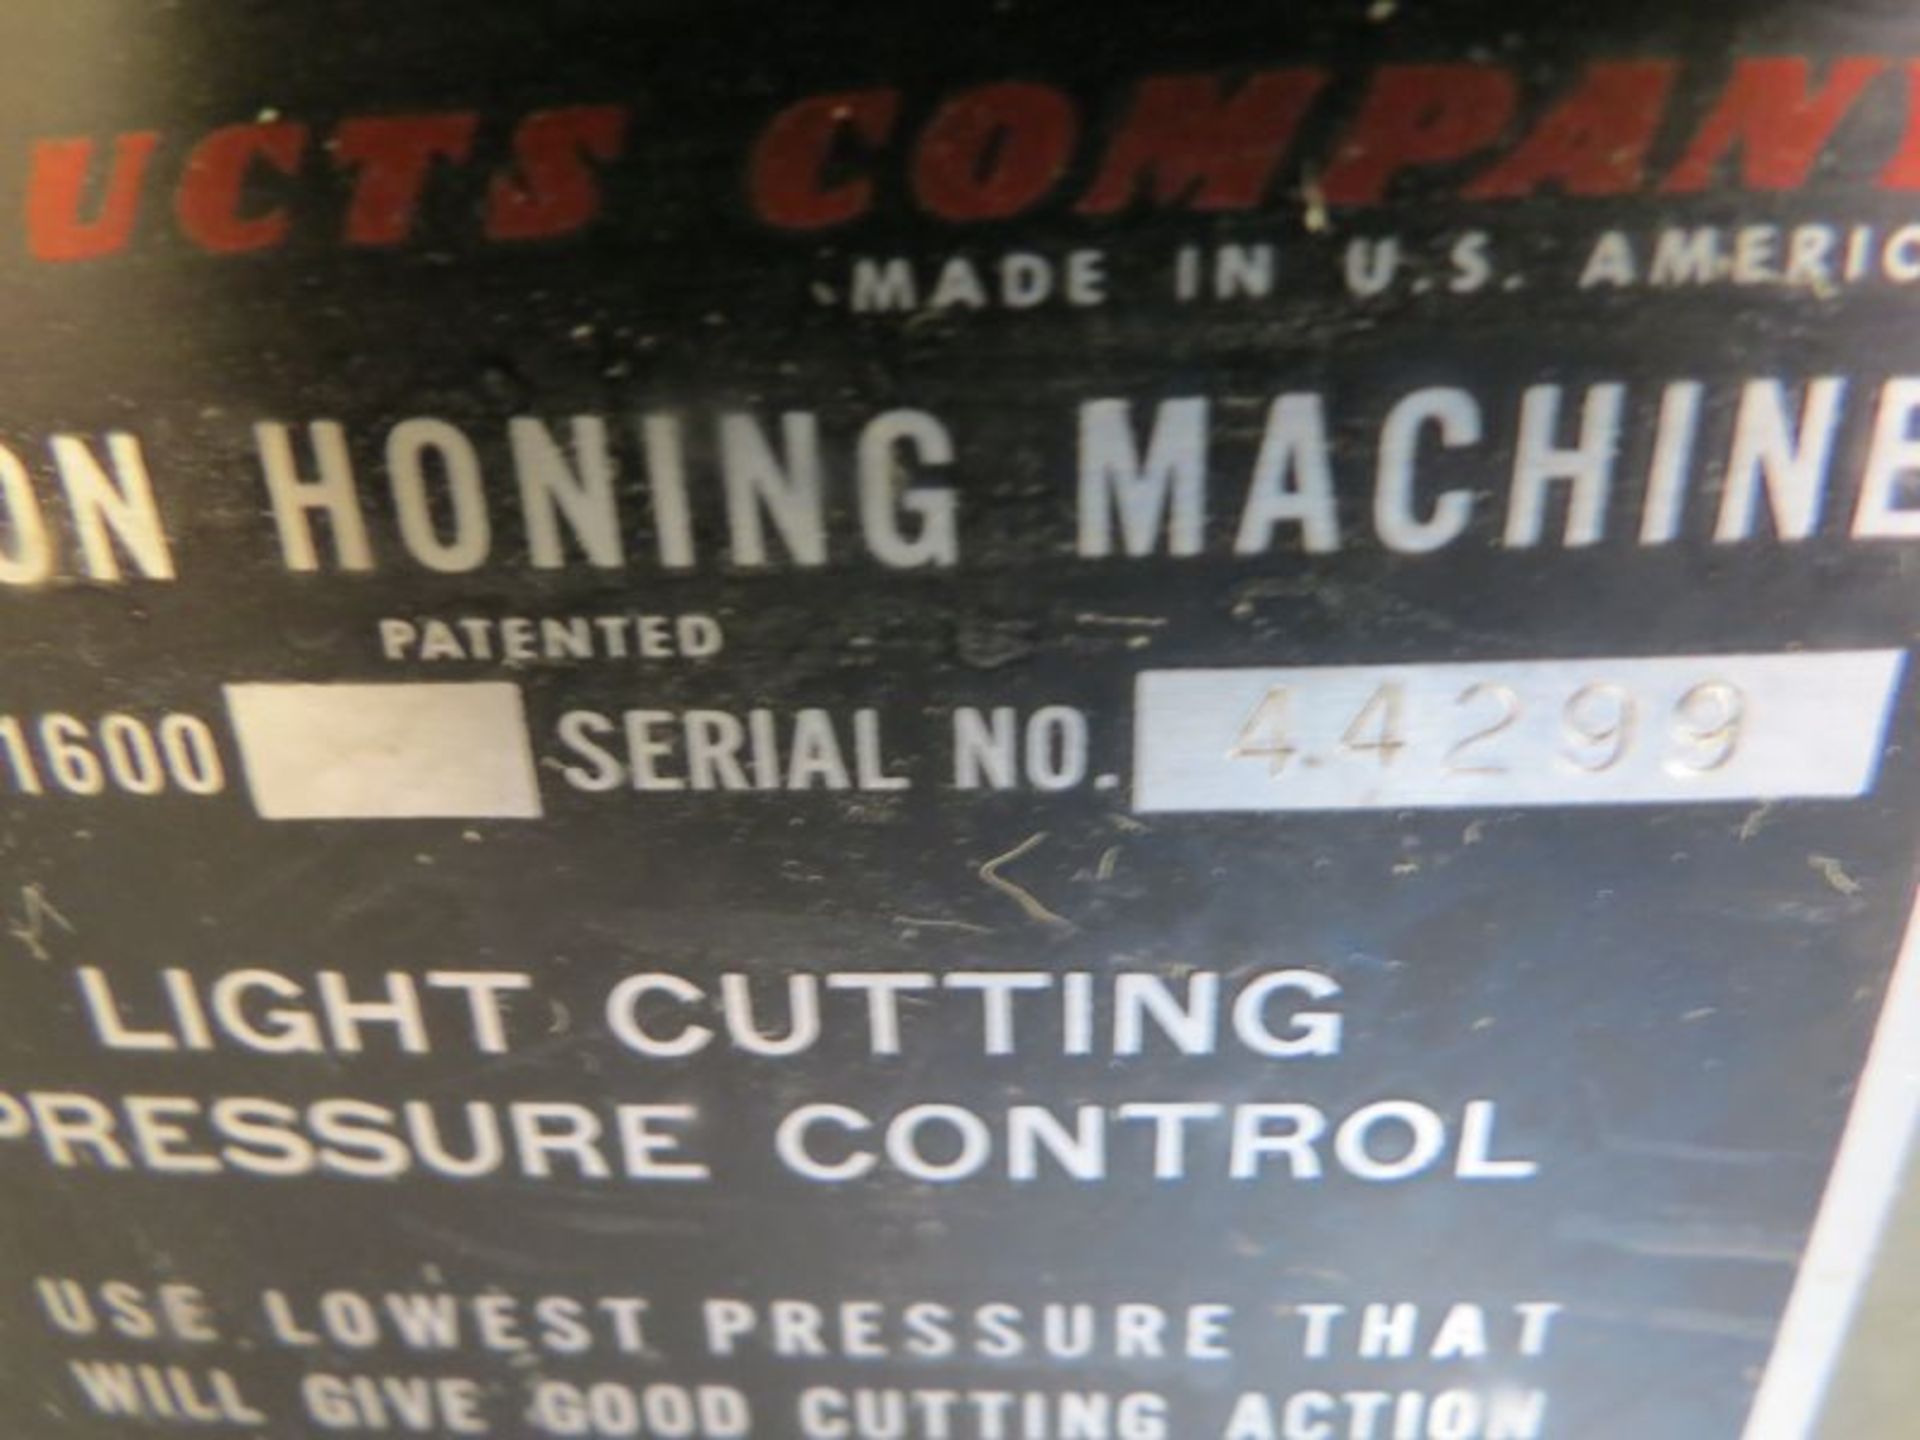 Sunnen MBB 1600 Honing Machine, s/n 44299 - Image 5 of 5